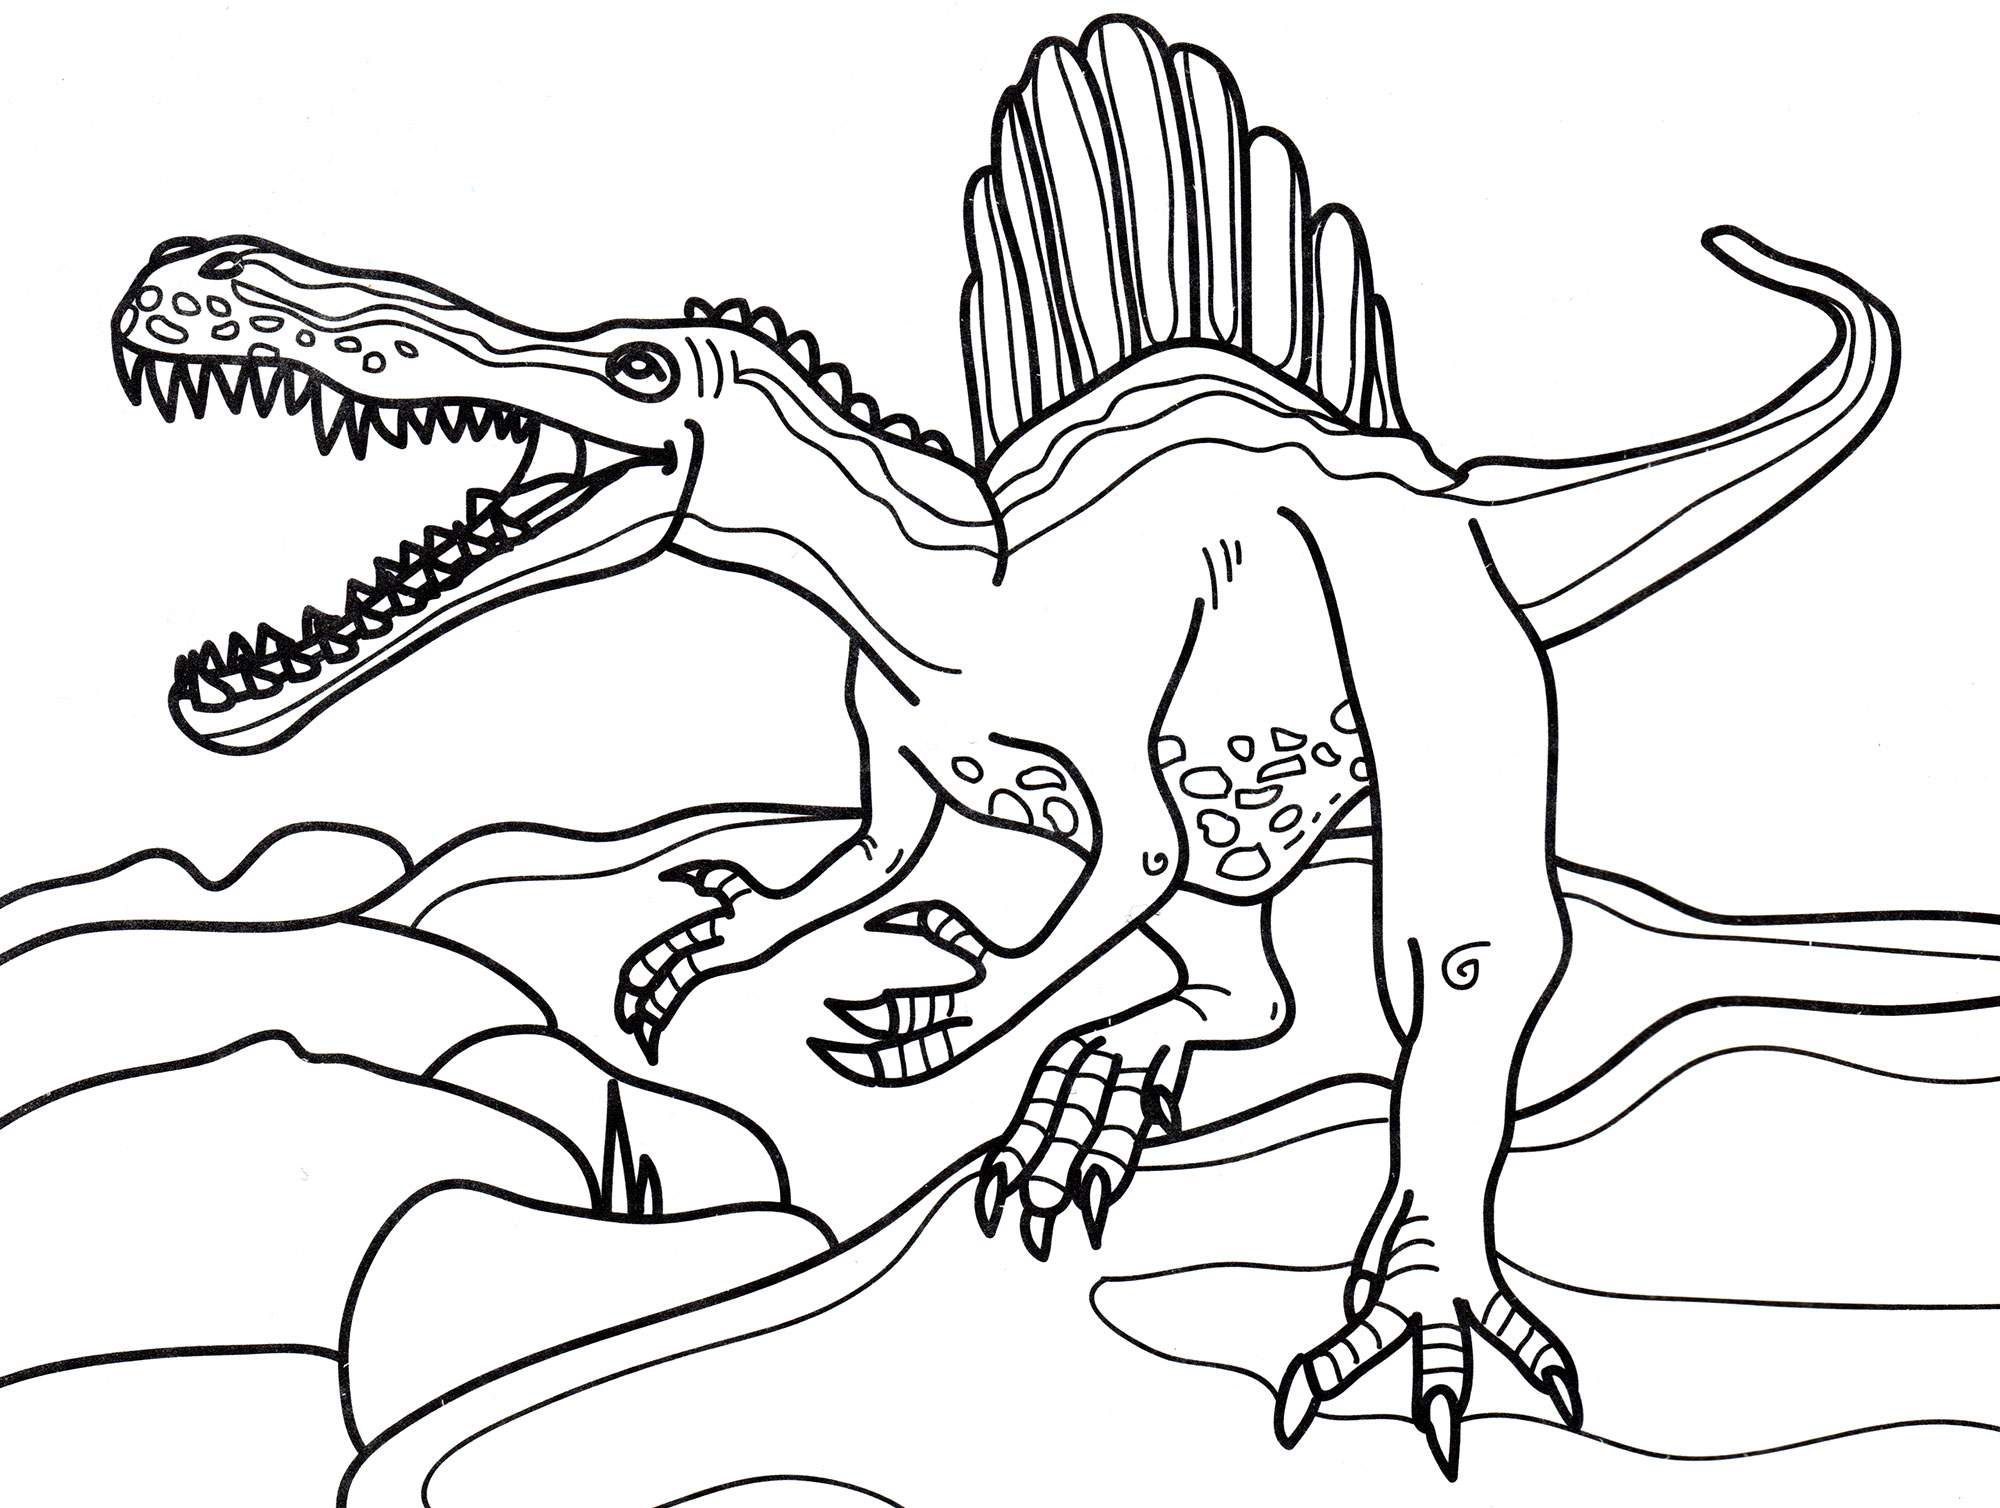 Раскраска динозавр формат а4. Раскраска динозавры Спинозавр. Свирепый Спинозавр. Спинозавр рисунок раскраска.